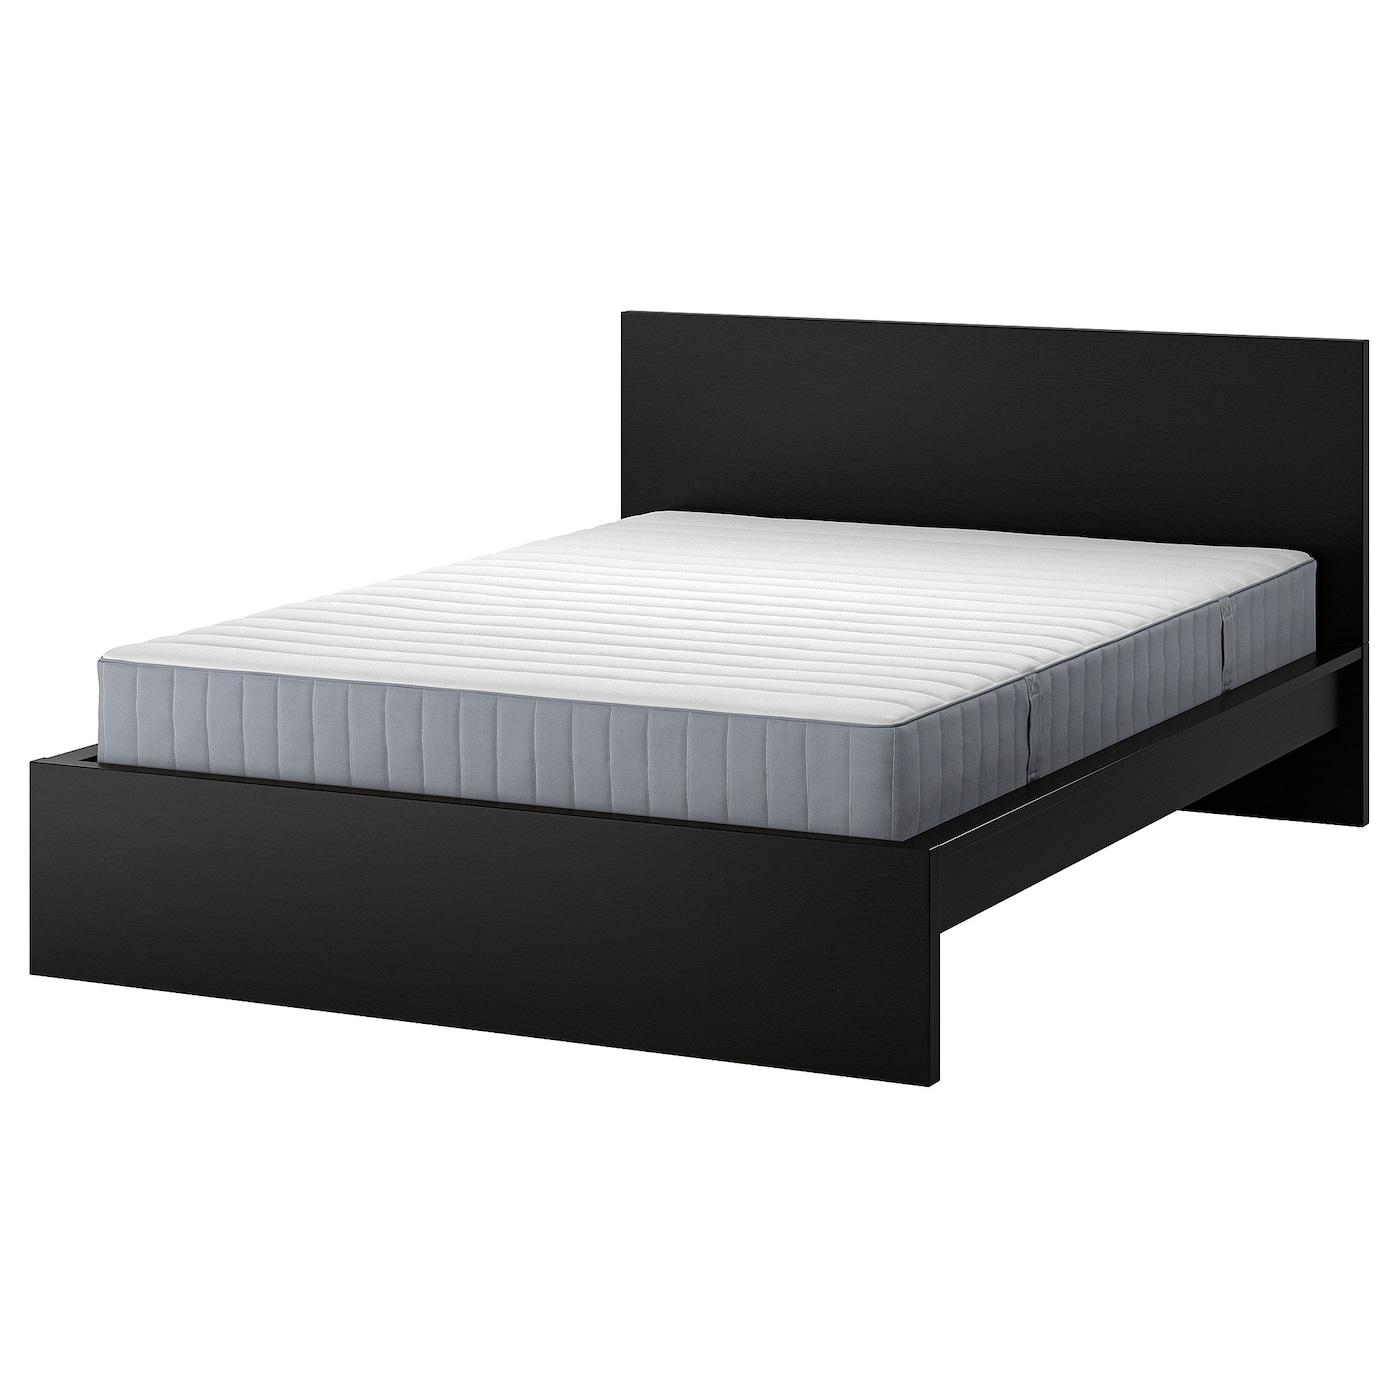 Кровать - IKEA MALM, 200х160 см, матрас жесткий, черно-коричневый, МАЛЬМ ИКЕА